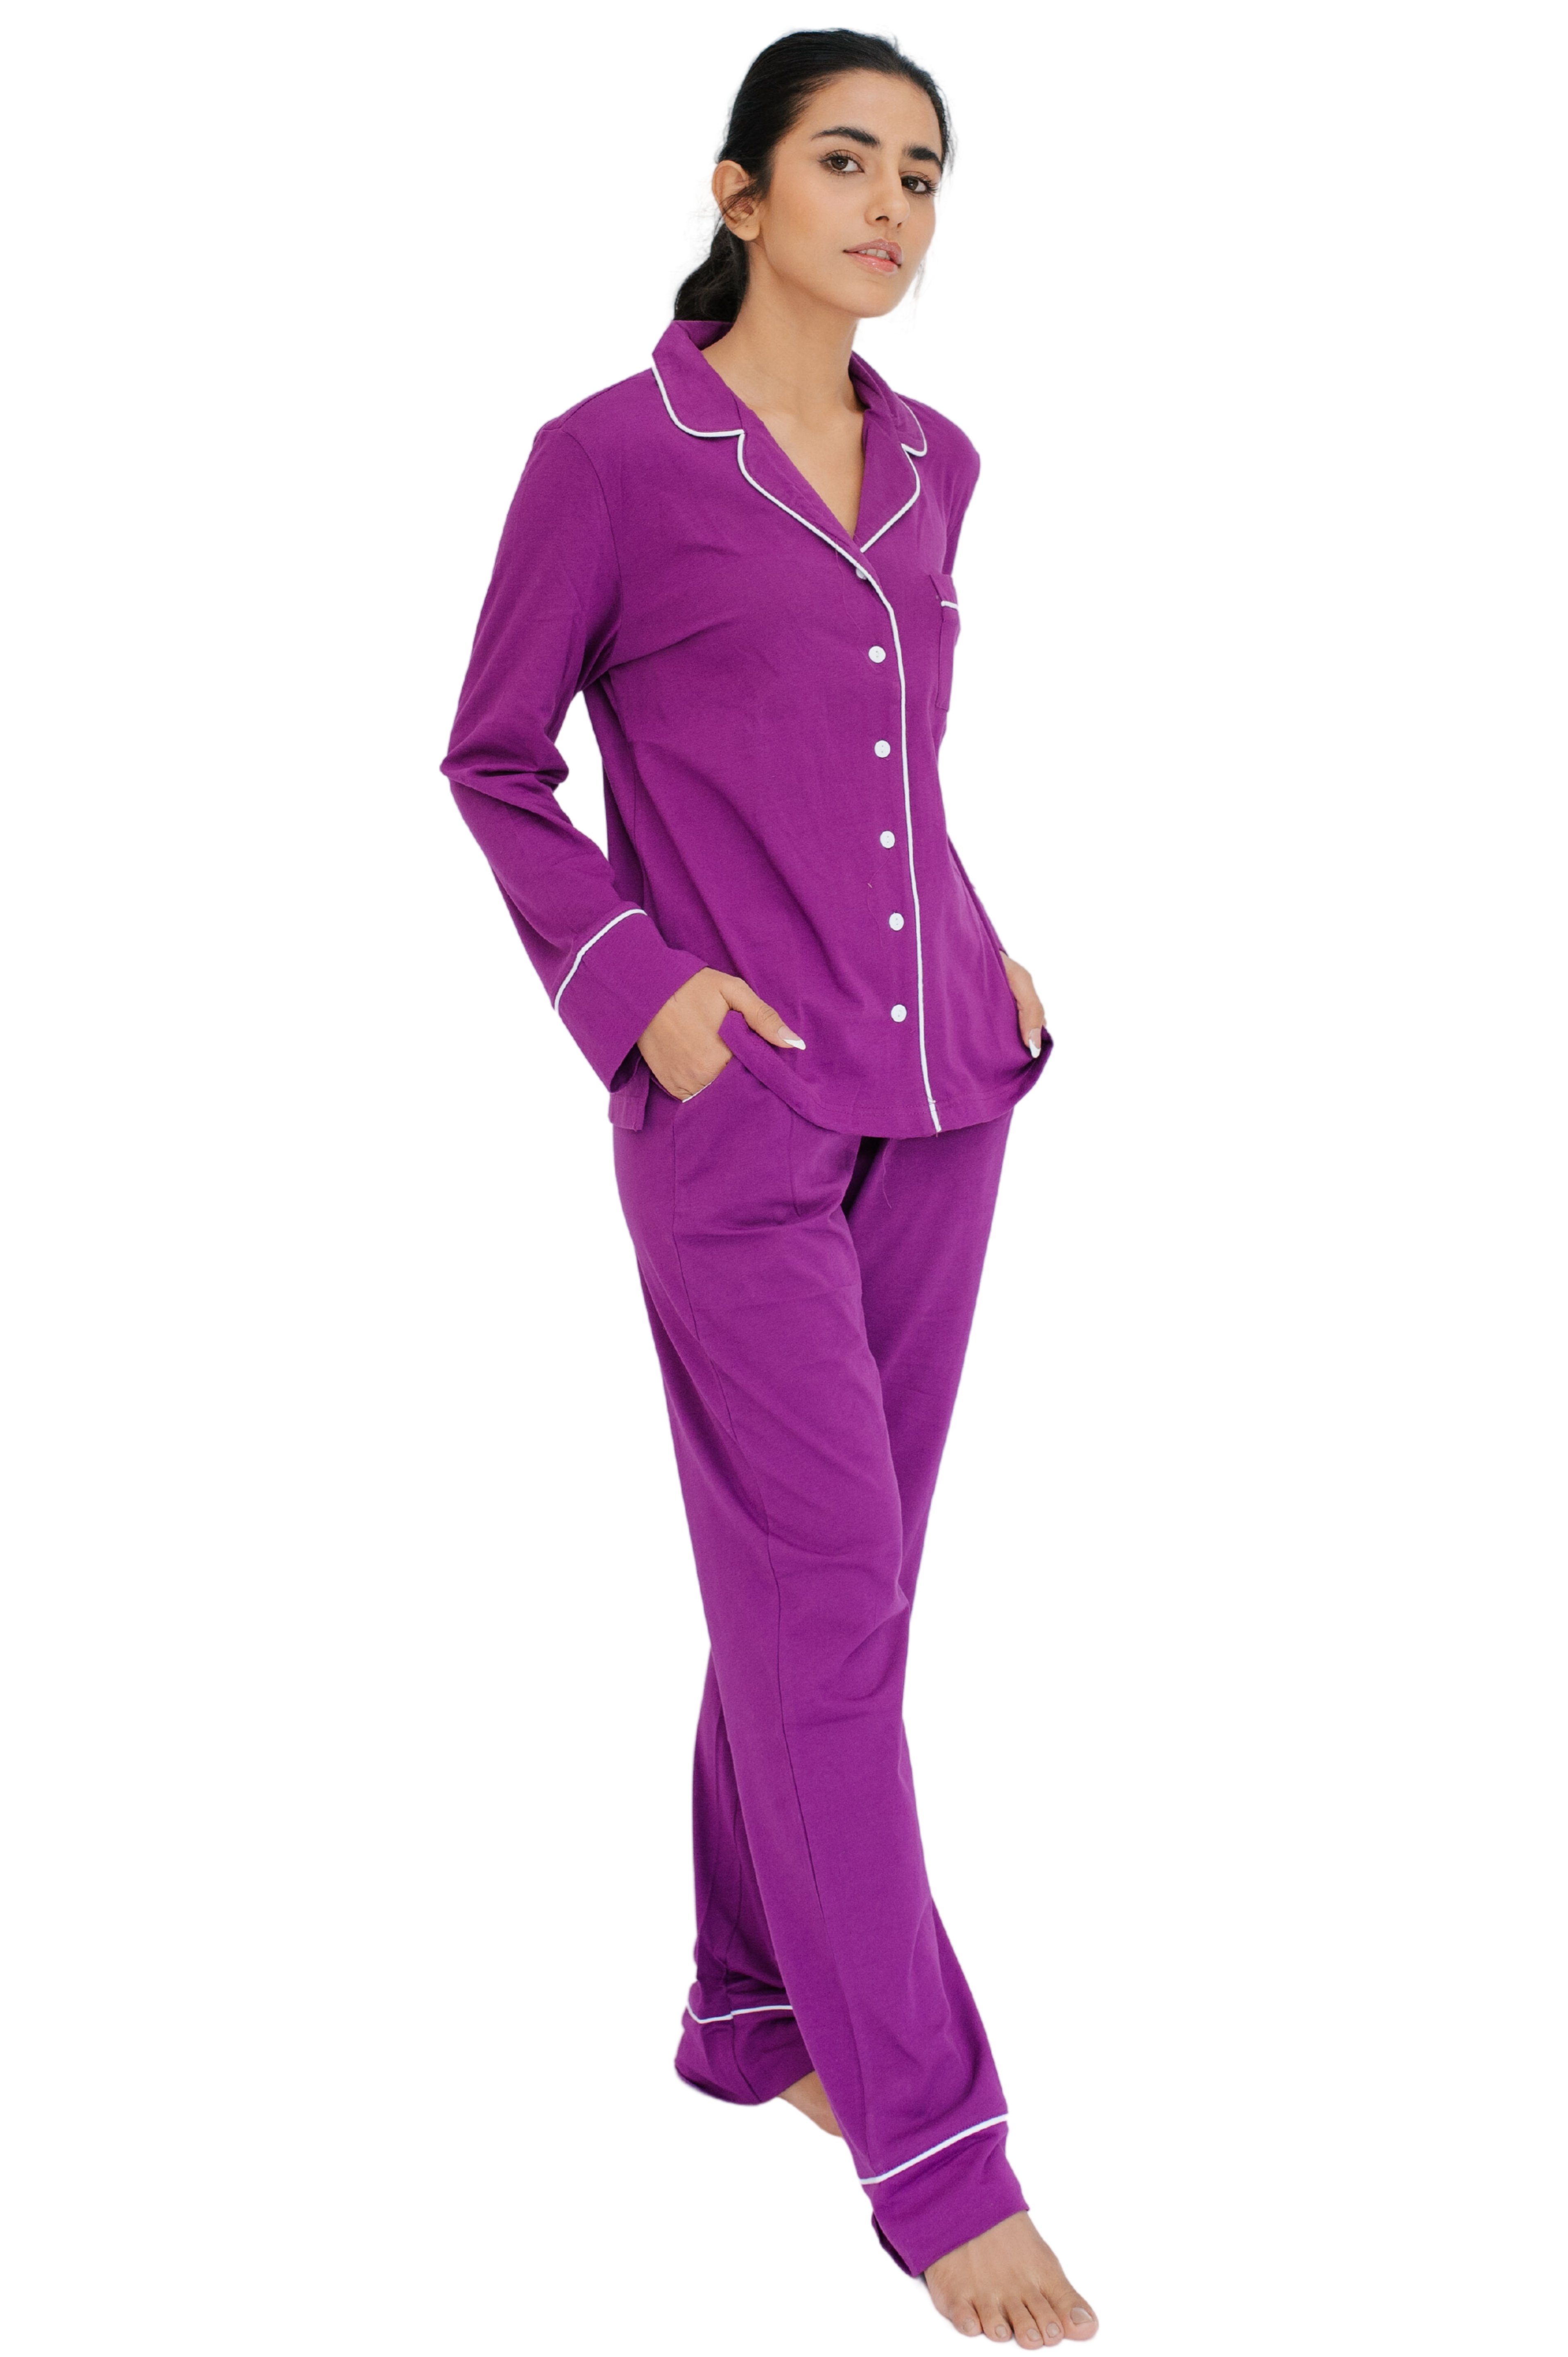 SNOOZE OFF Pyjama Schlafanzug in violett (2 tlg., 1 Stück) mit  Kontrastpaspel-Details | Pyjama-Sets